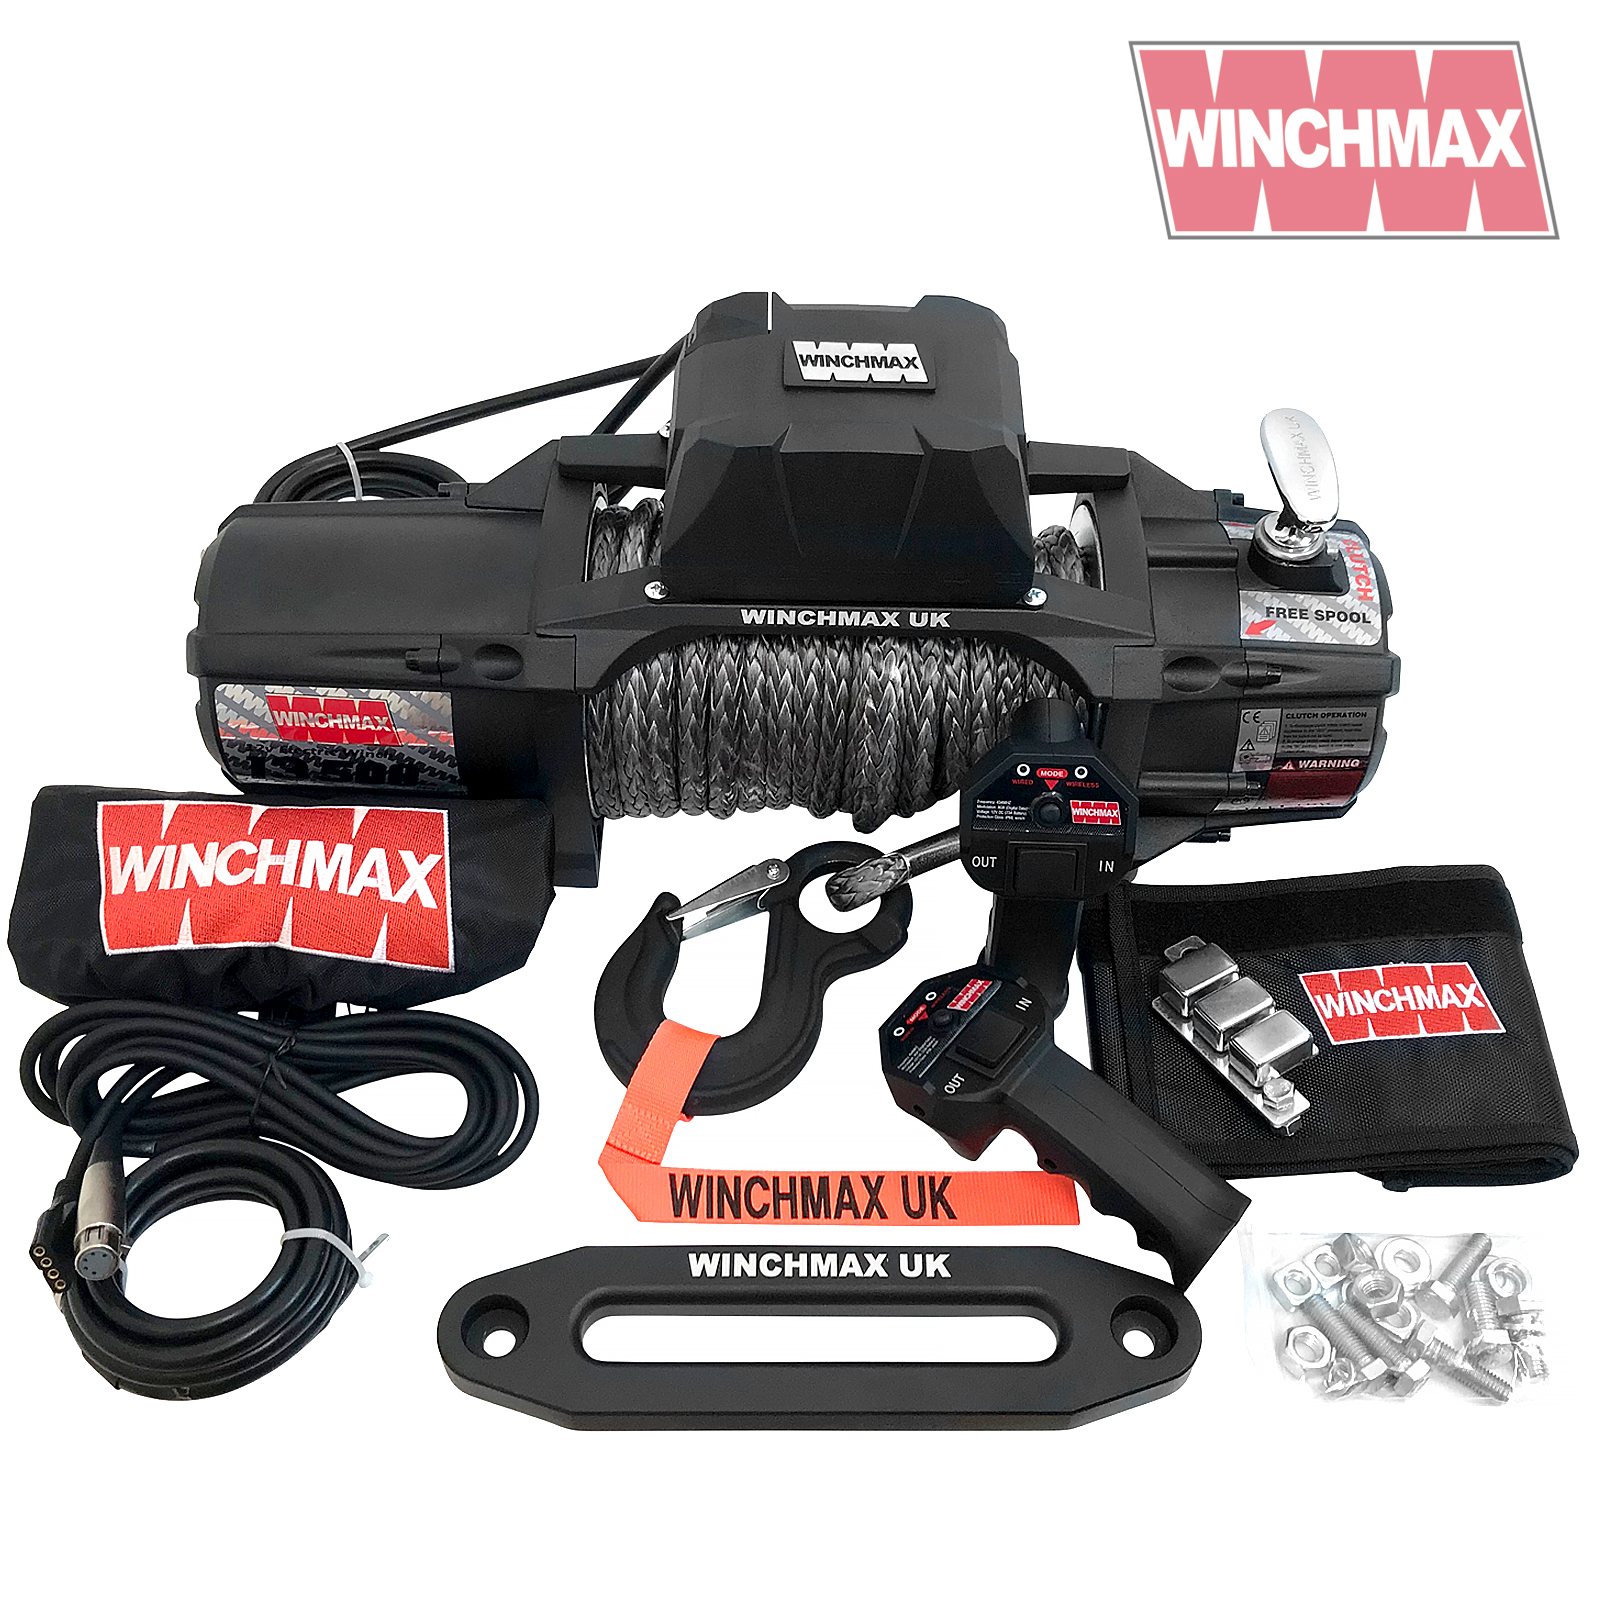 WINCHMAX 13500lb 12v Military Grade Winch